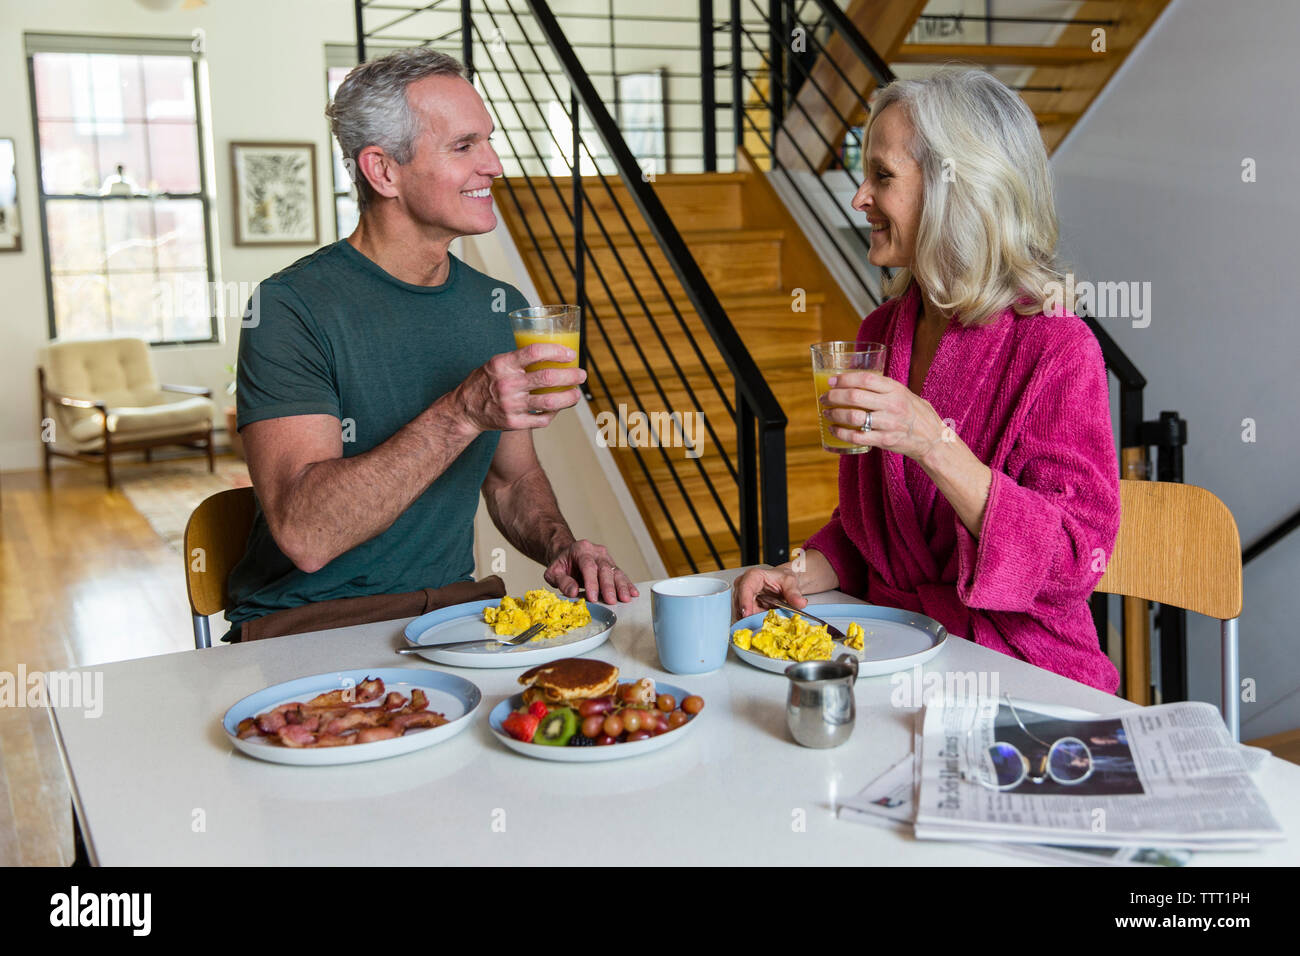 Smiling couple holding jus tout en regardant face à face à une table à manger Banque D'Images